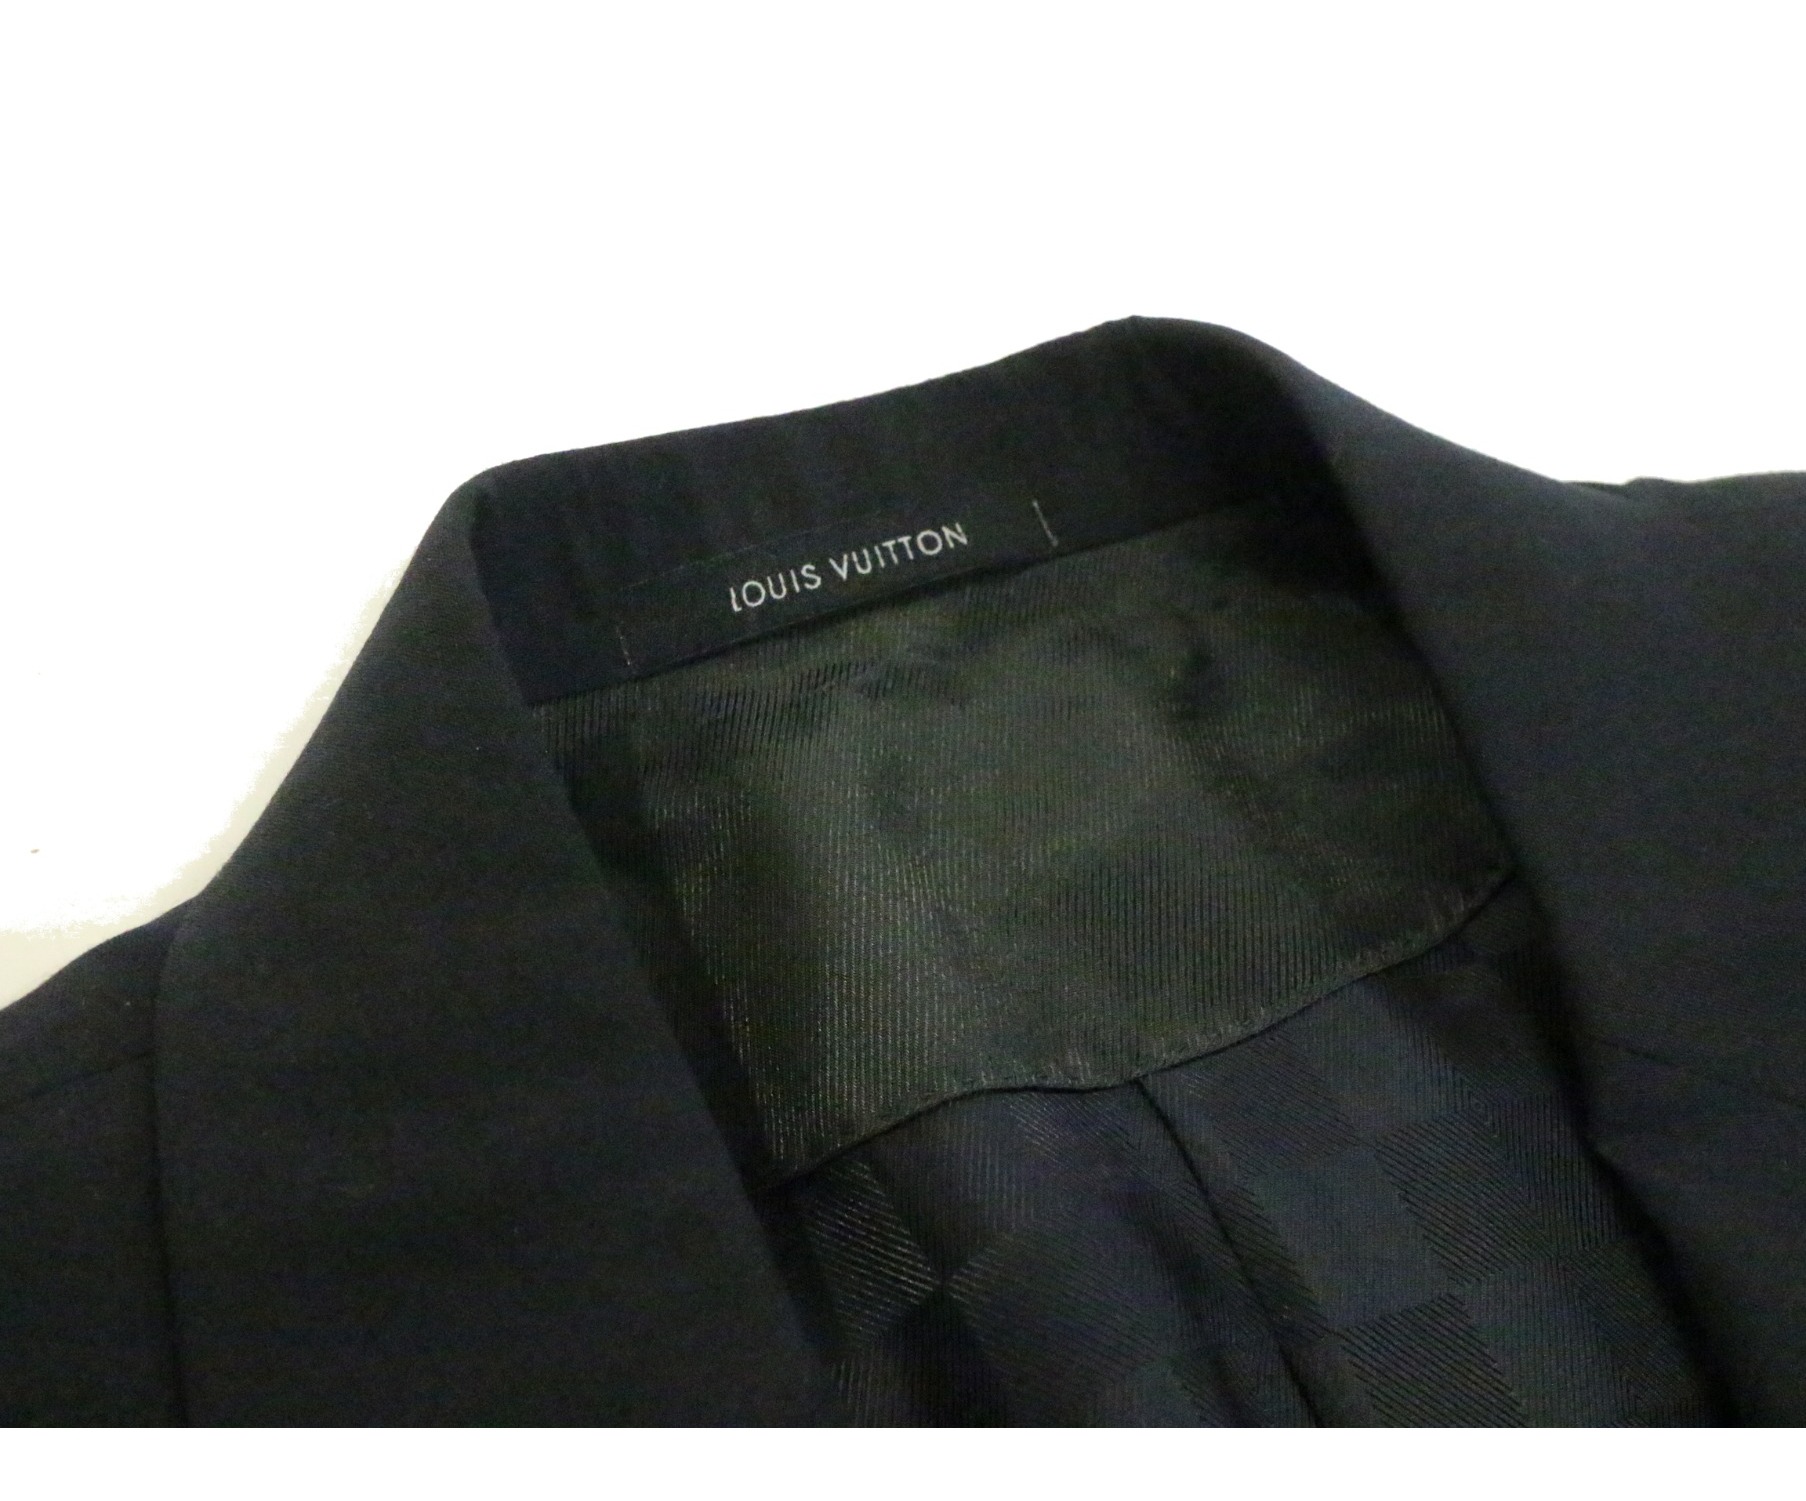 LOUIS VUITTON (ルイヴィトン) テーラードジャケット ブラック サイズ:52 ITALY製 裏地ダミエ柄